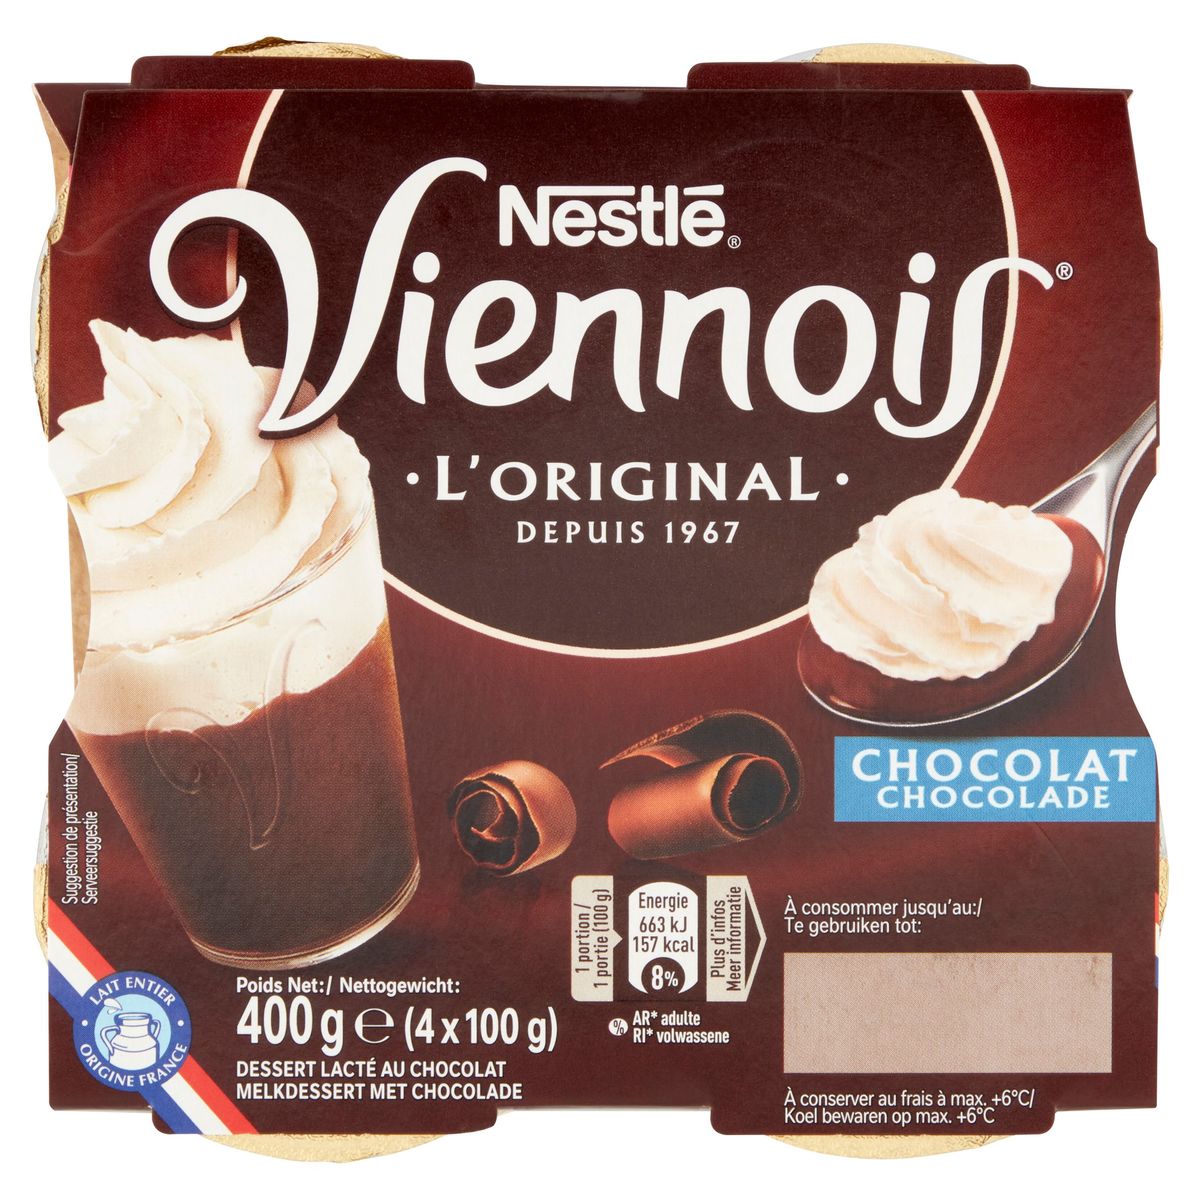 Le Viennois l'Original Chocolade 4 x 100 g